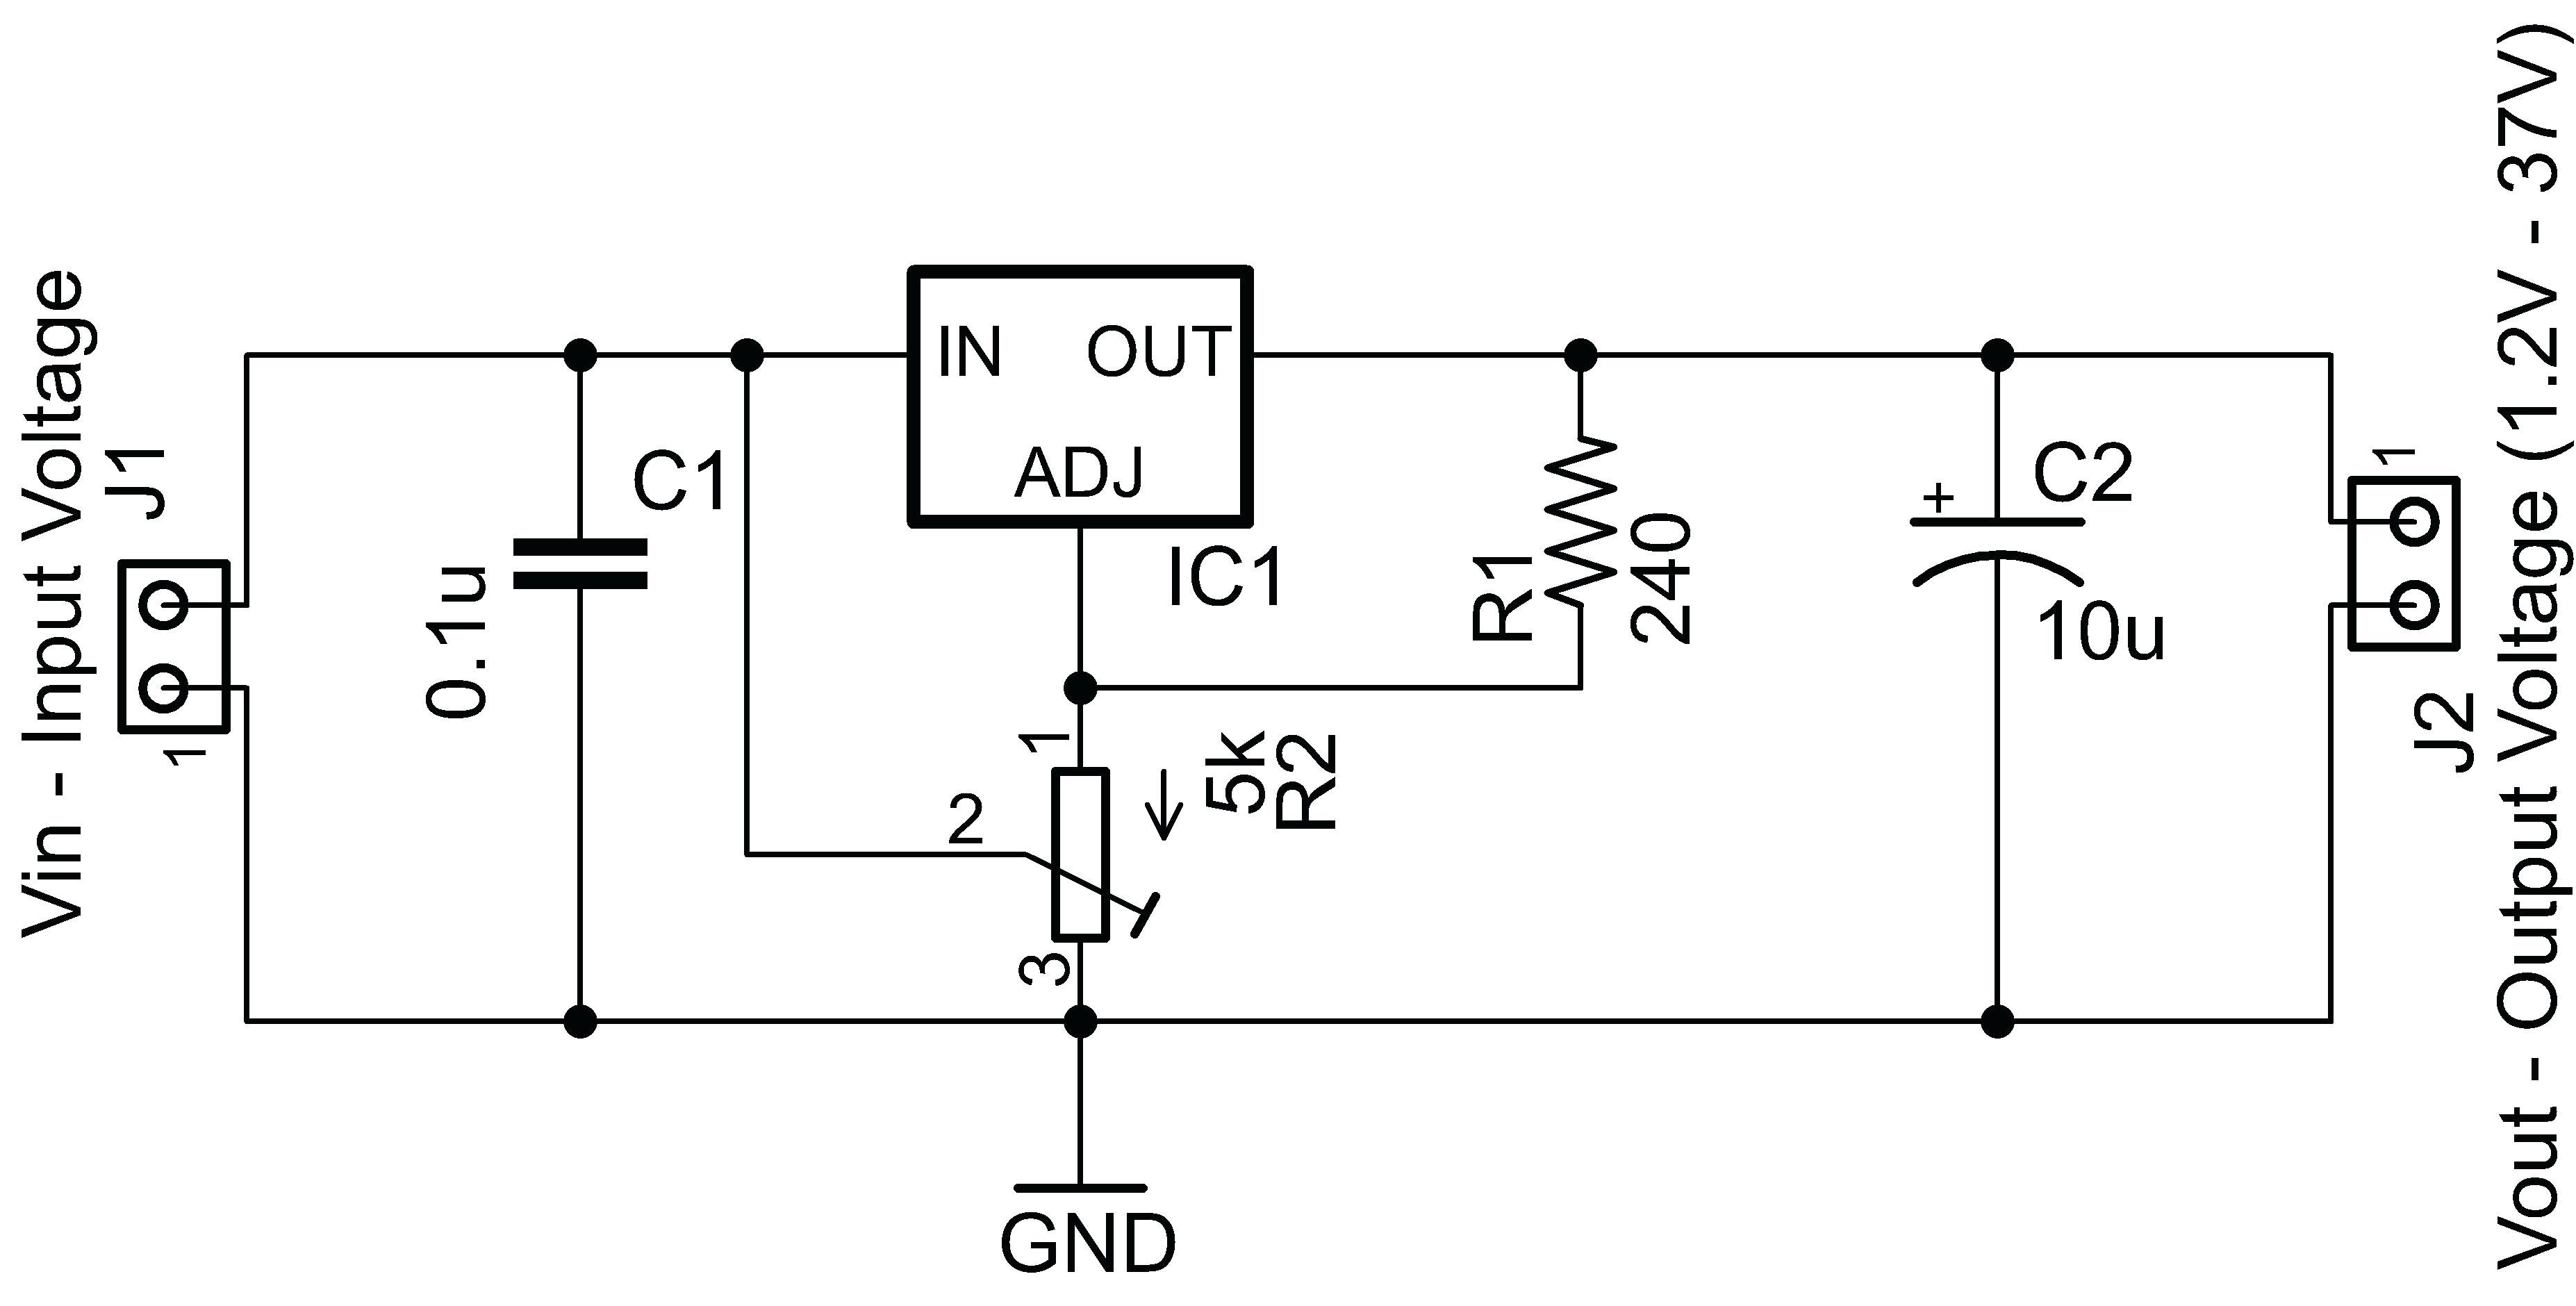 Alternator Wiring Diagram W Terminal New Alternator Wiring Diagram External Regulator Typical and Voltage